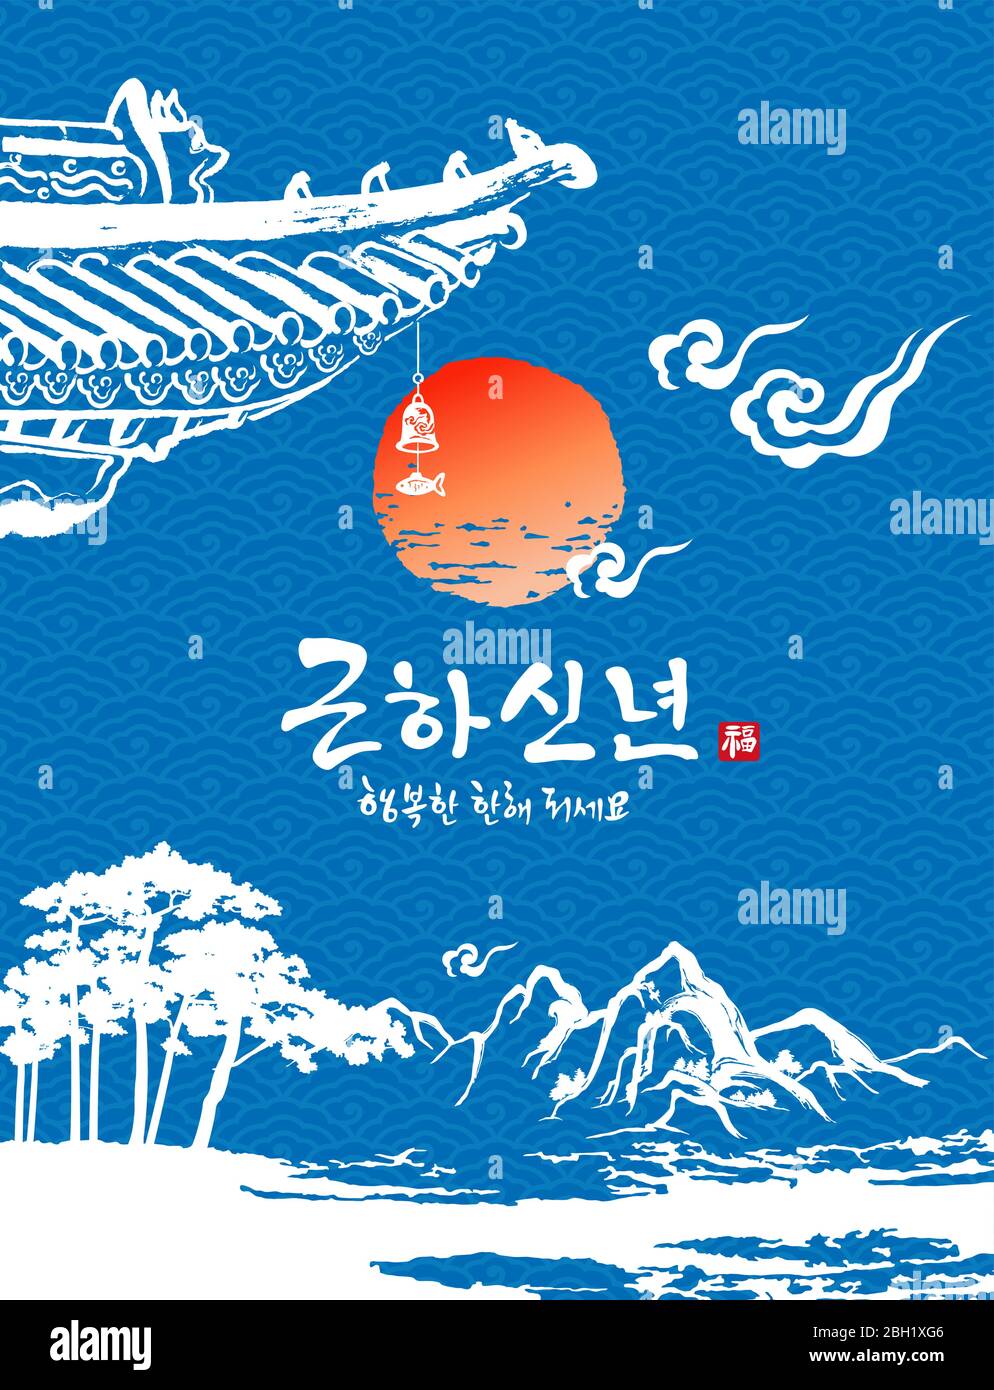 Frohes neues Jahr, Übersetzung des koreanischen Textes: Frohes neues Jahr Kalligraphie und koreanische traditionelle koreanische Malerei Vektor-Illustration. Stock Vektor